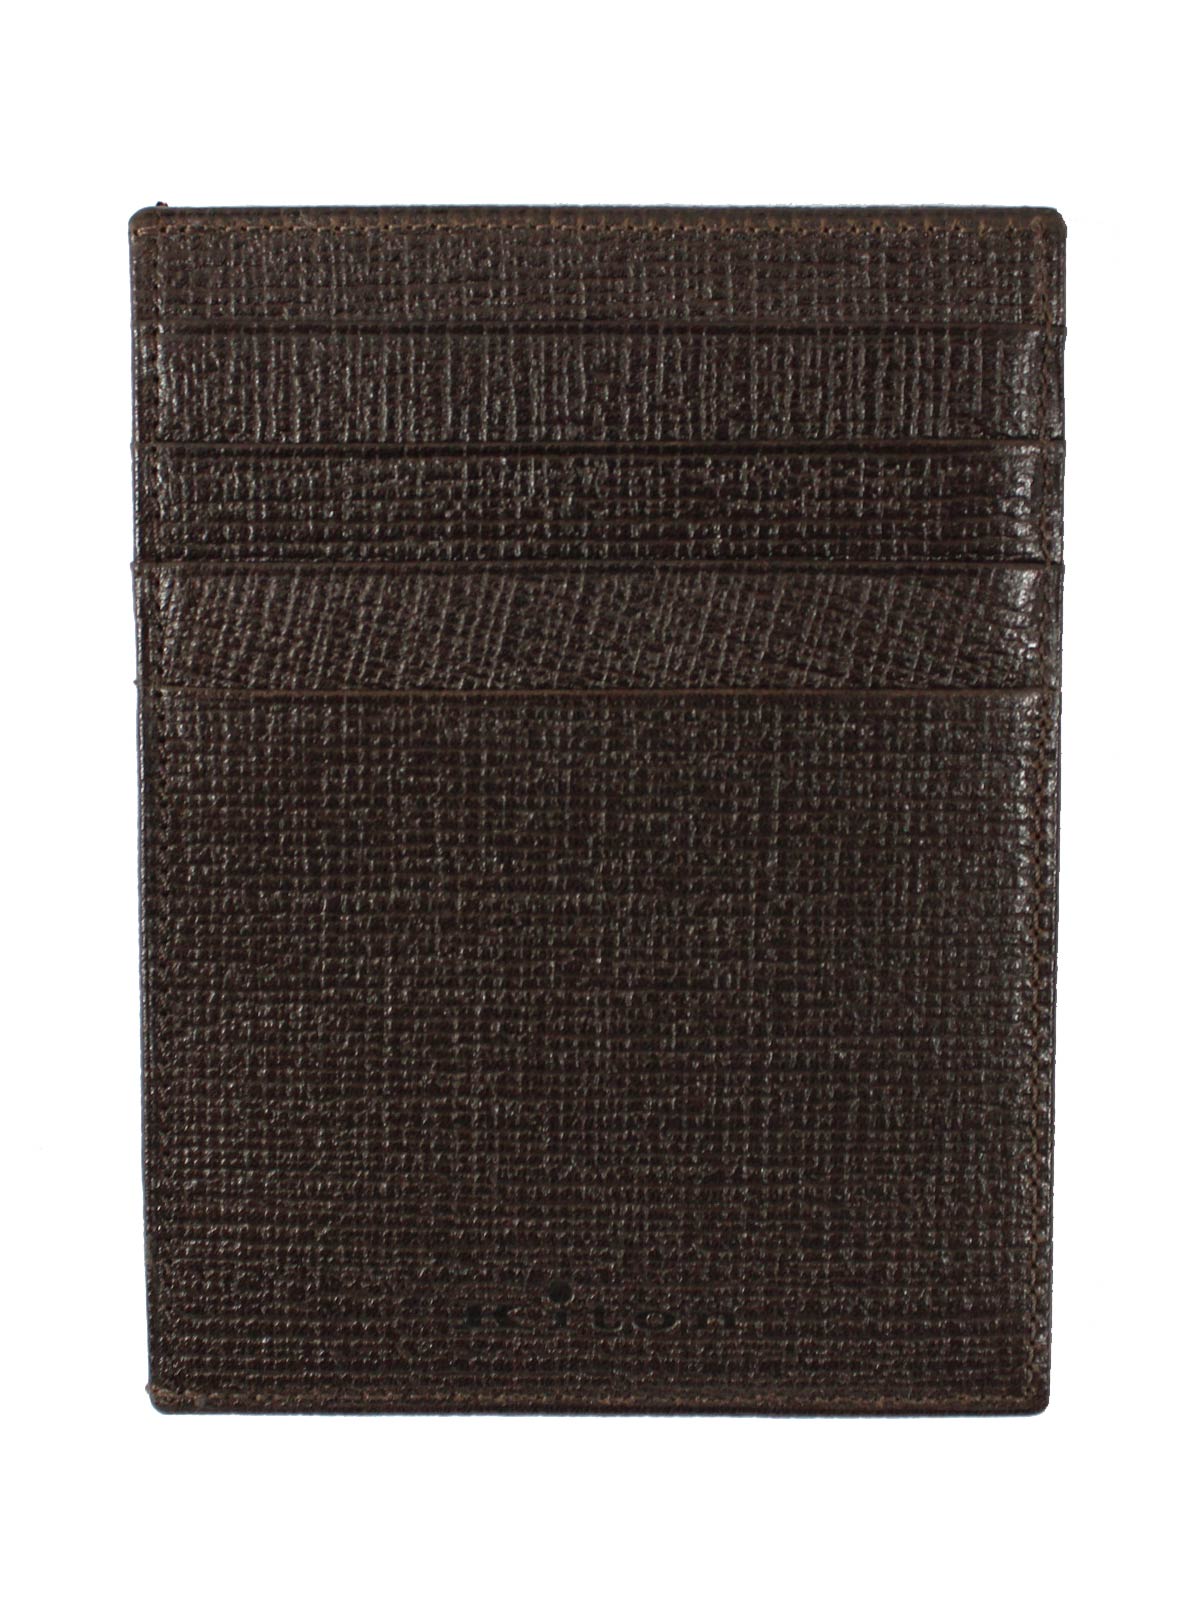 Kiton Wallet - Dark Brown Grain Leather Men Wallet Credit Card Holder - Tie  Deals